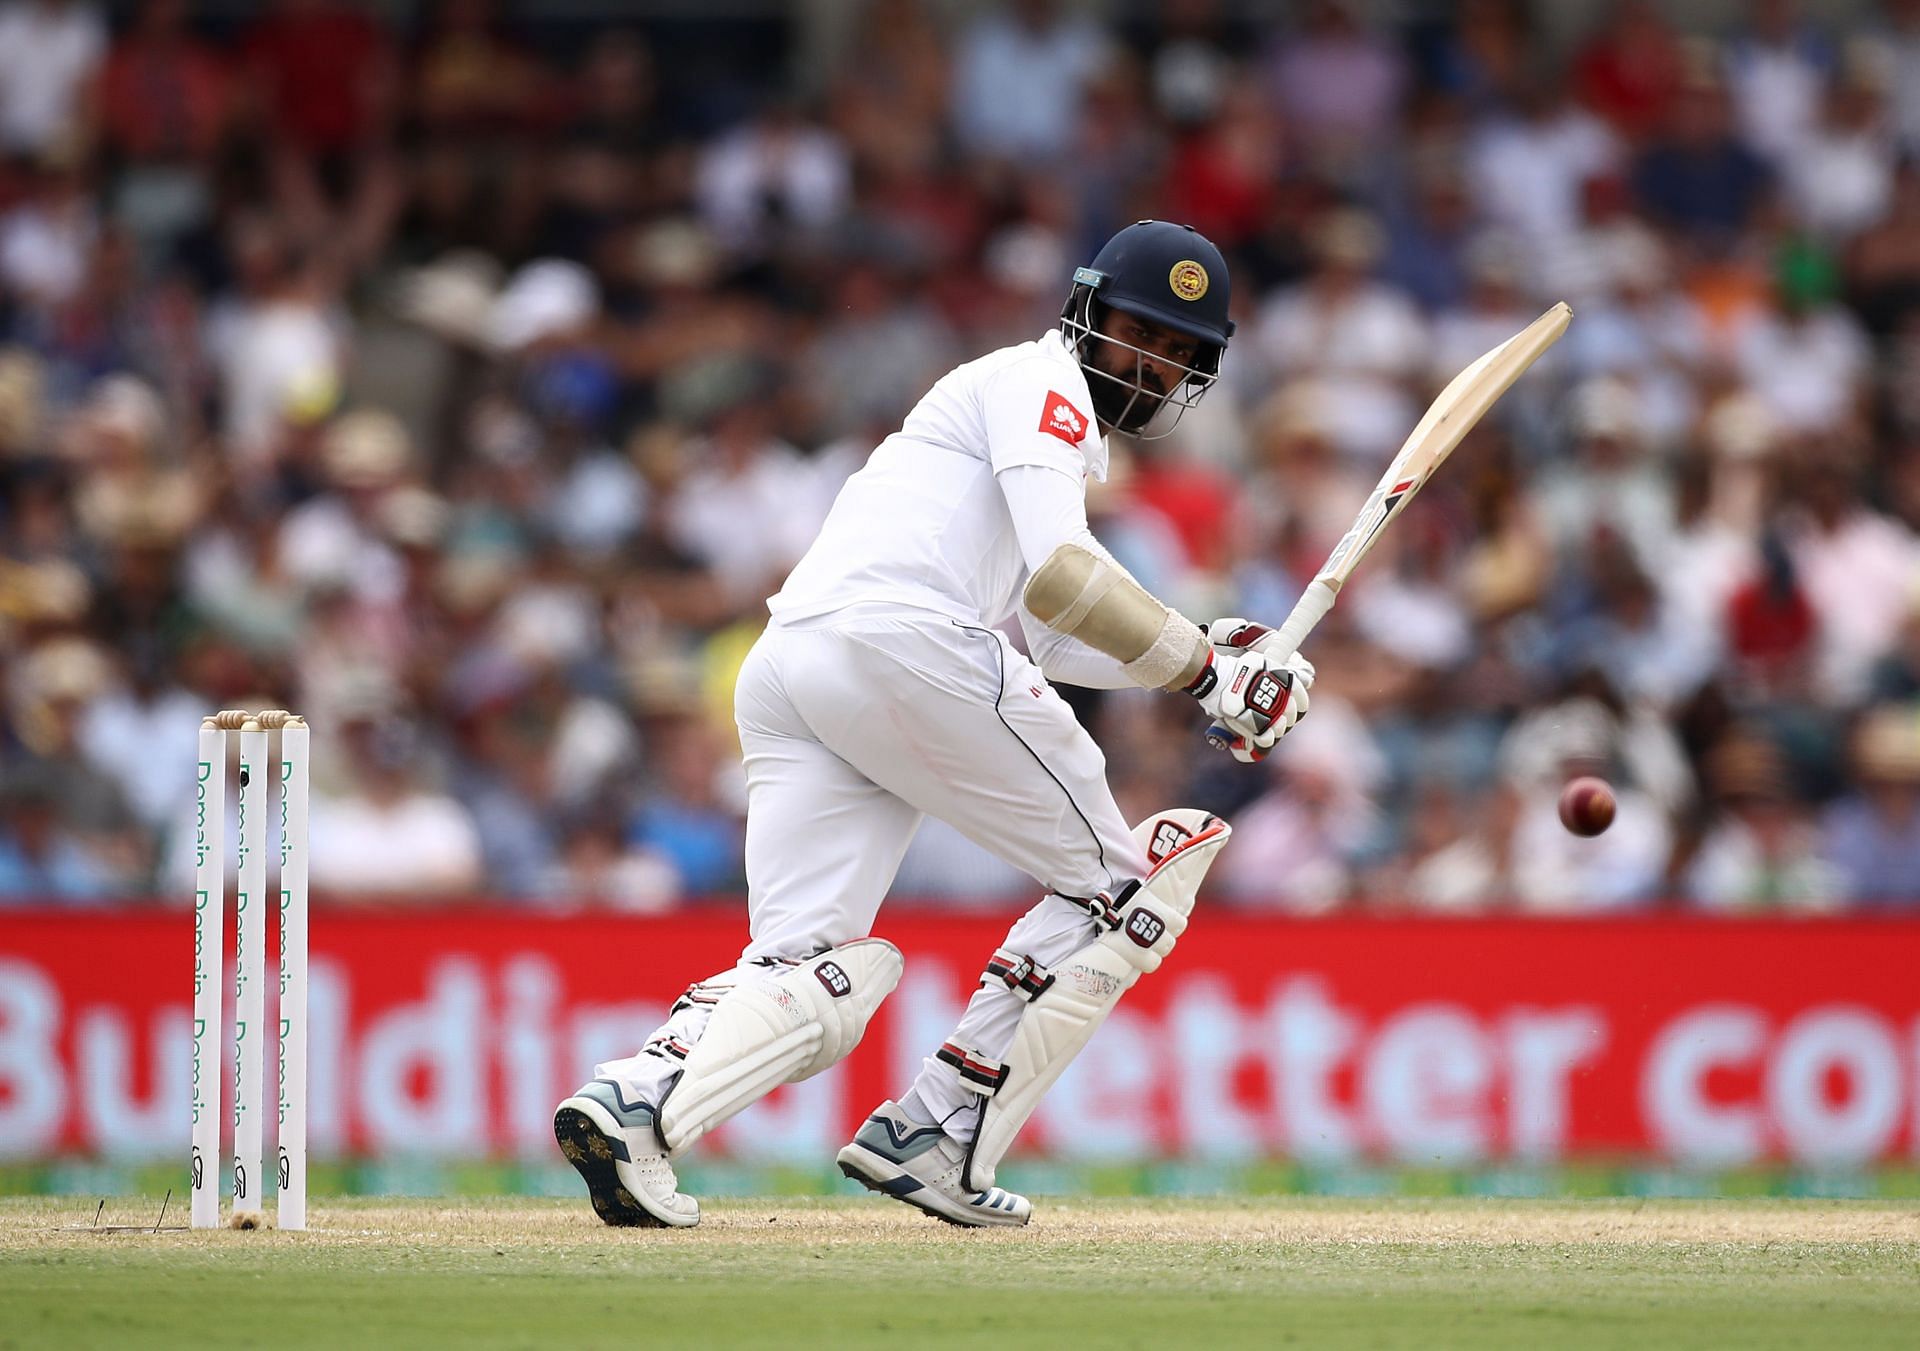 Australia v Sri Lanka - 2nd Test: Day 2